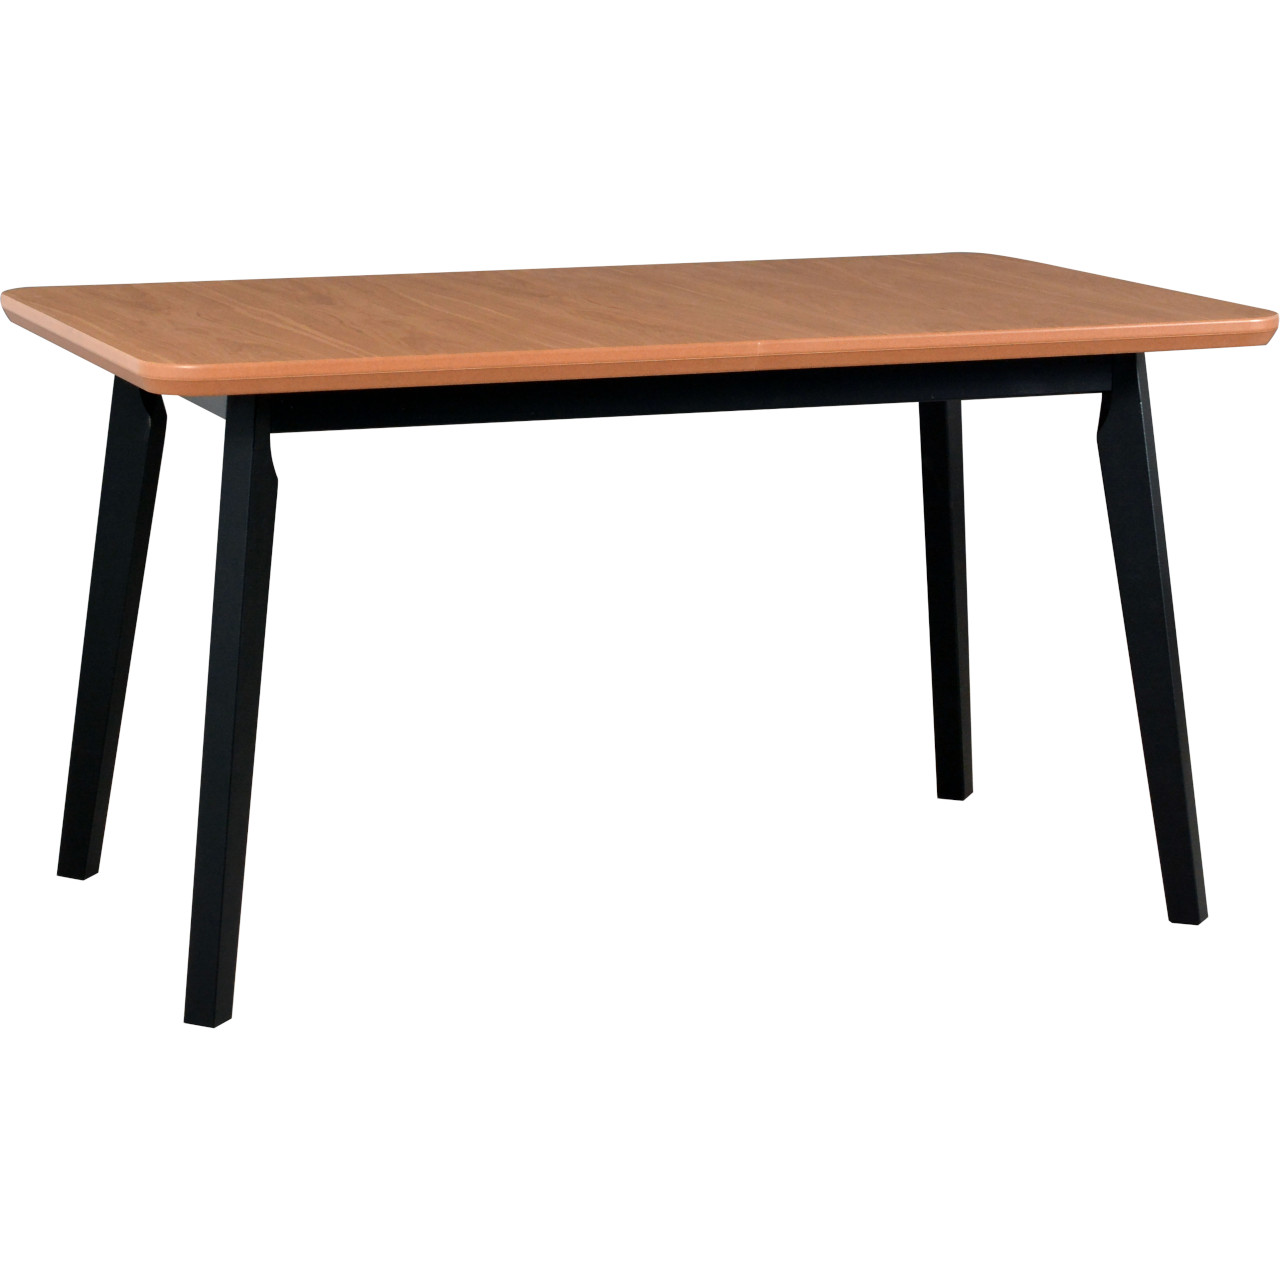 Table OSLO 7 80x140/180 oak veneer / black